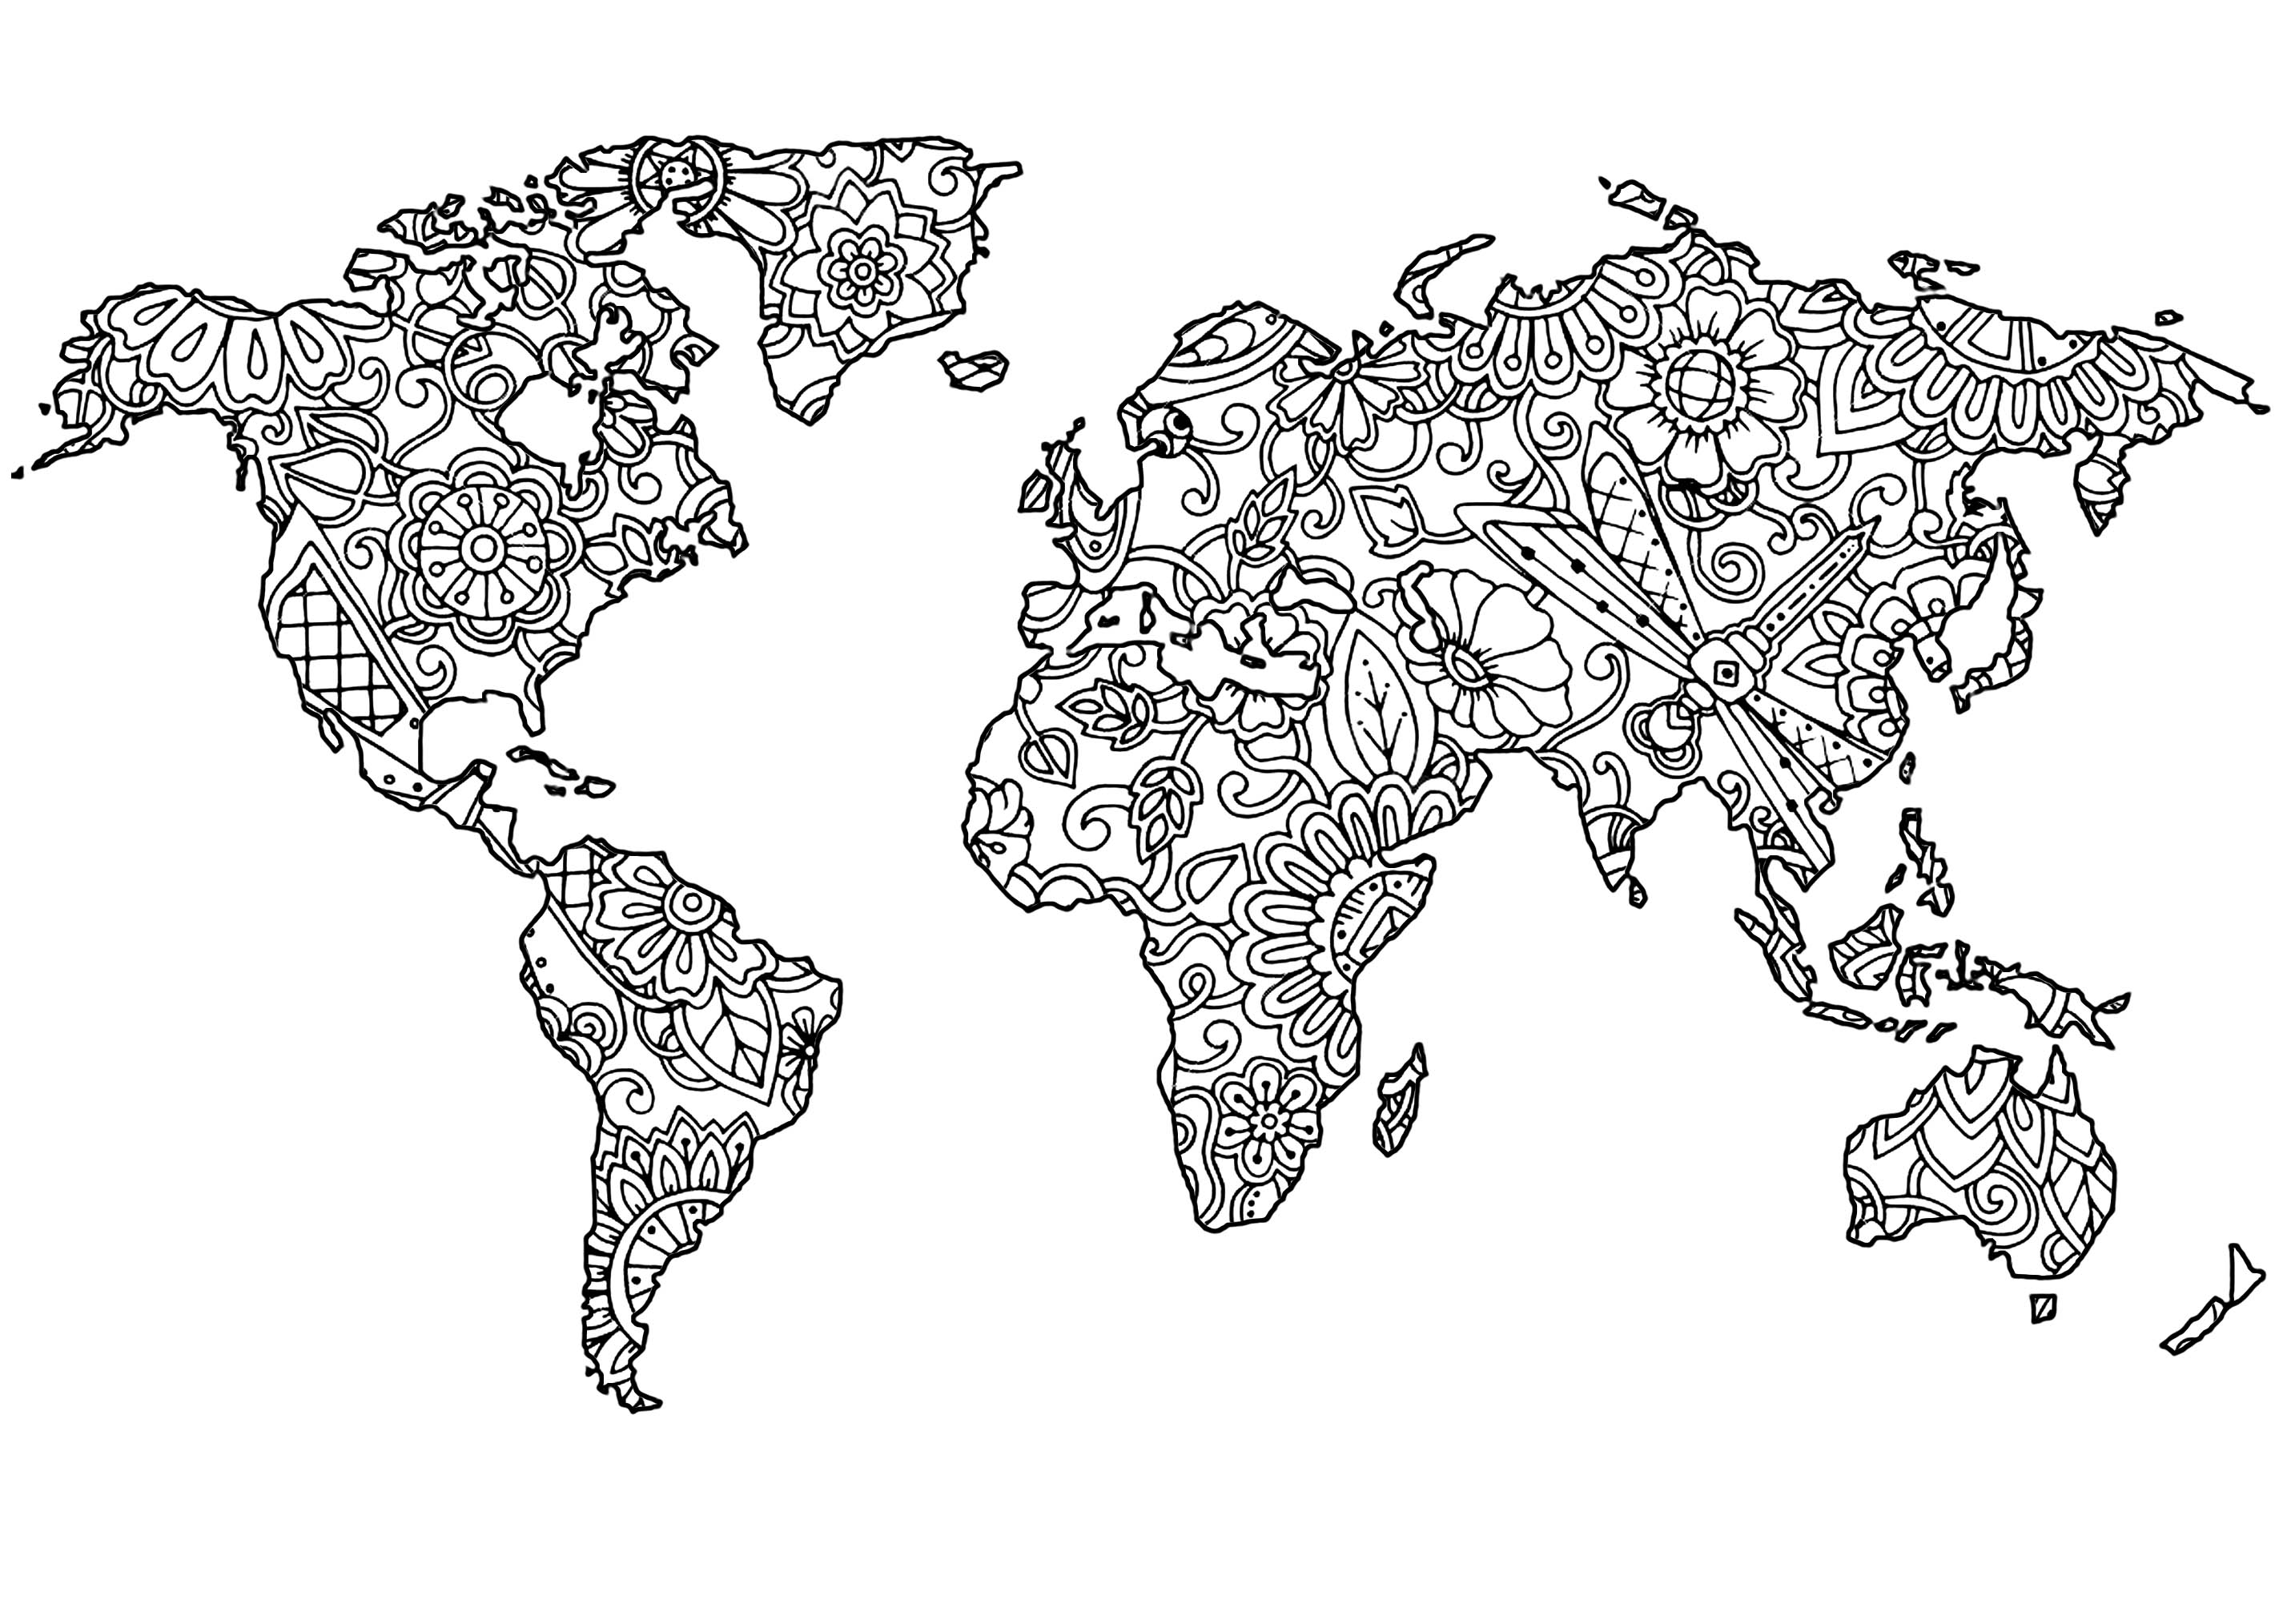 Planisphère avec motifs fleuris dans les continents, Artiste : Art'Isabelle